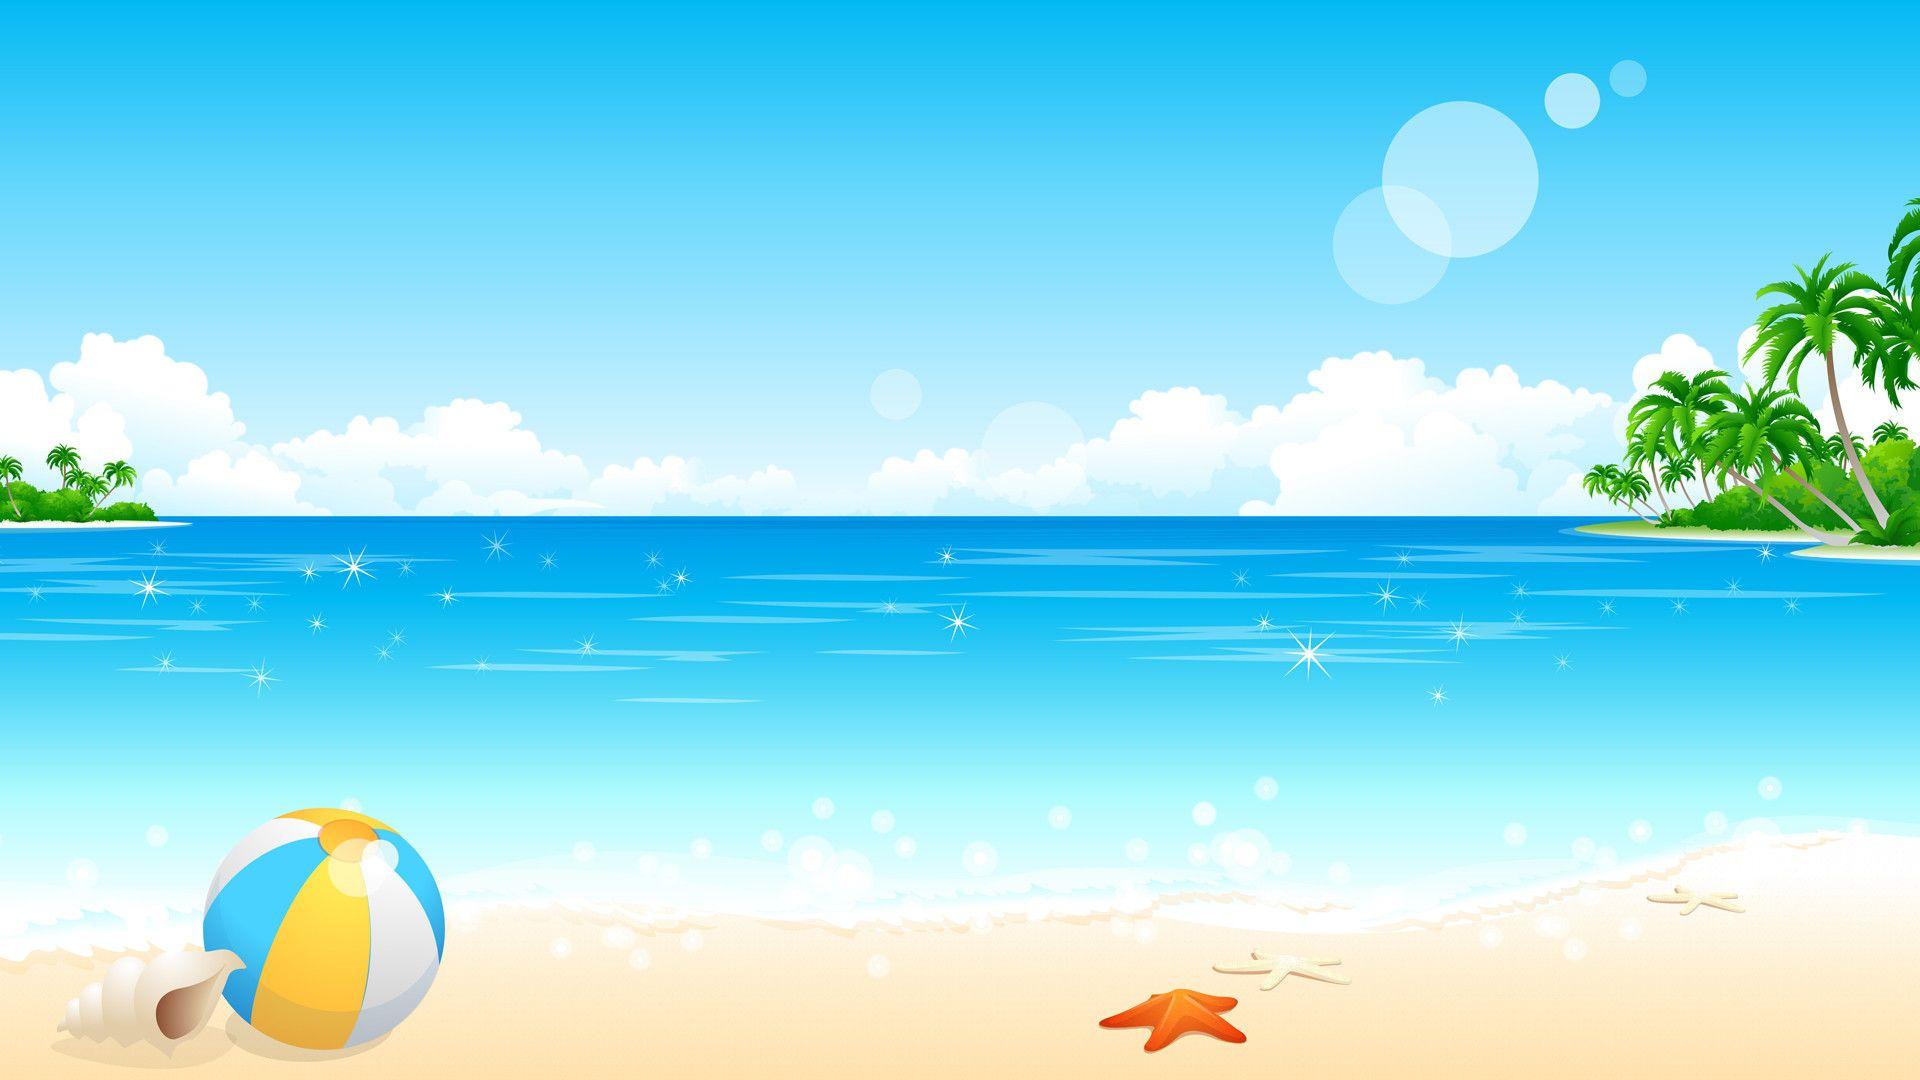 Cartoon Ocean Wallpapers - Top Free Cartoon Ocean Backgrounds